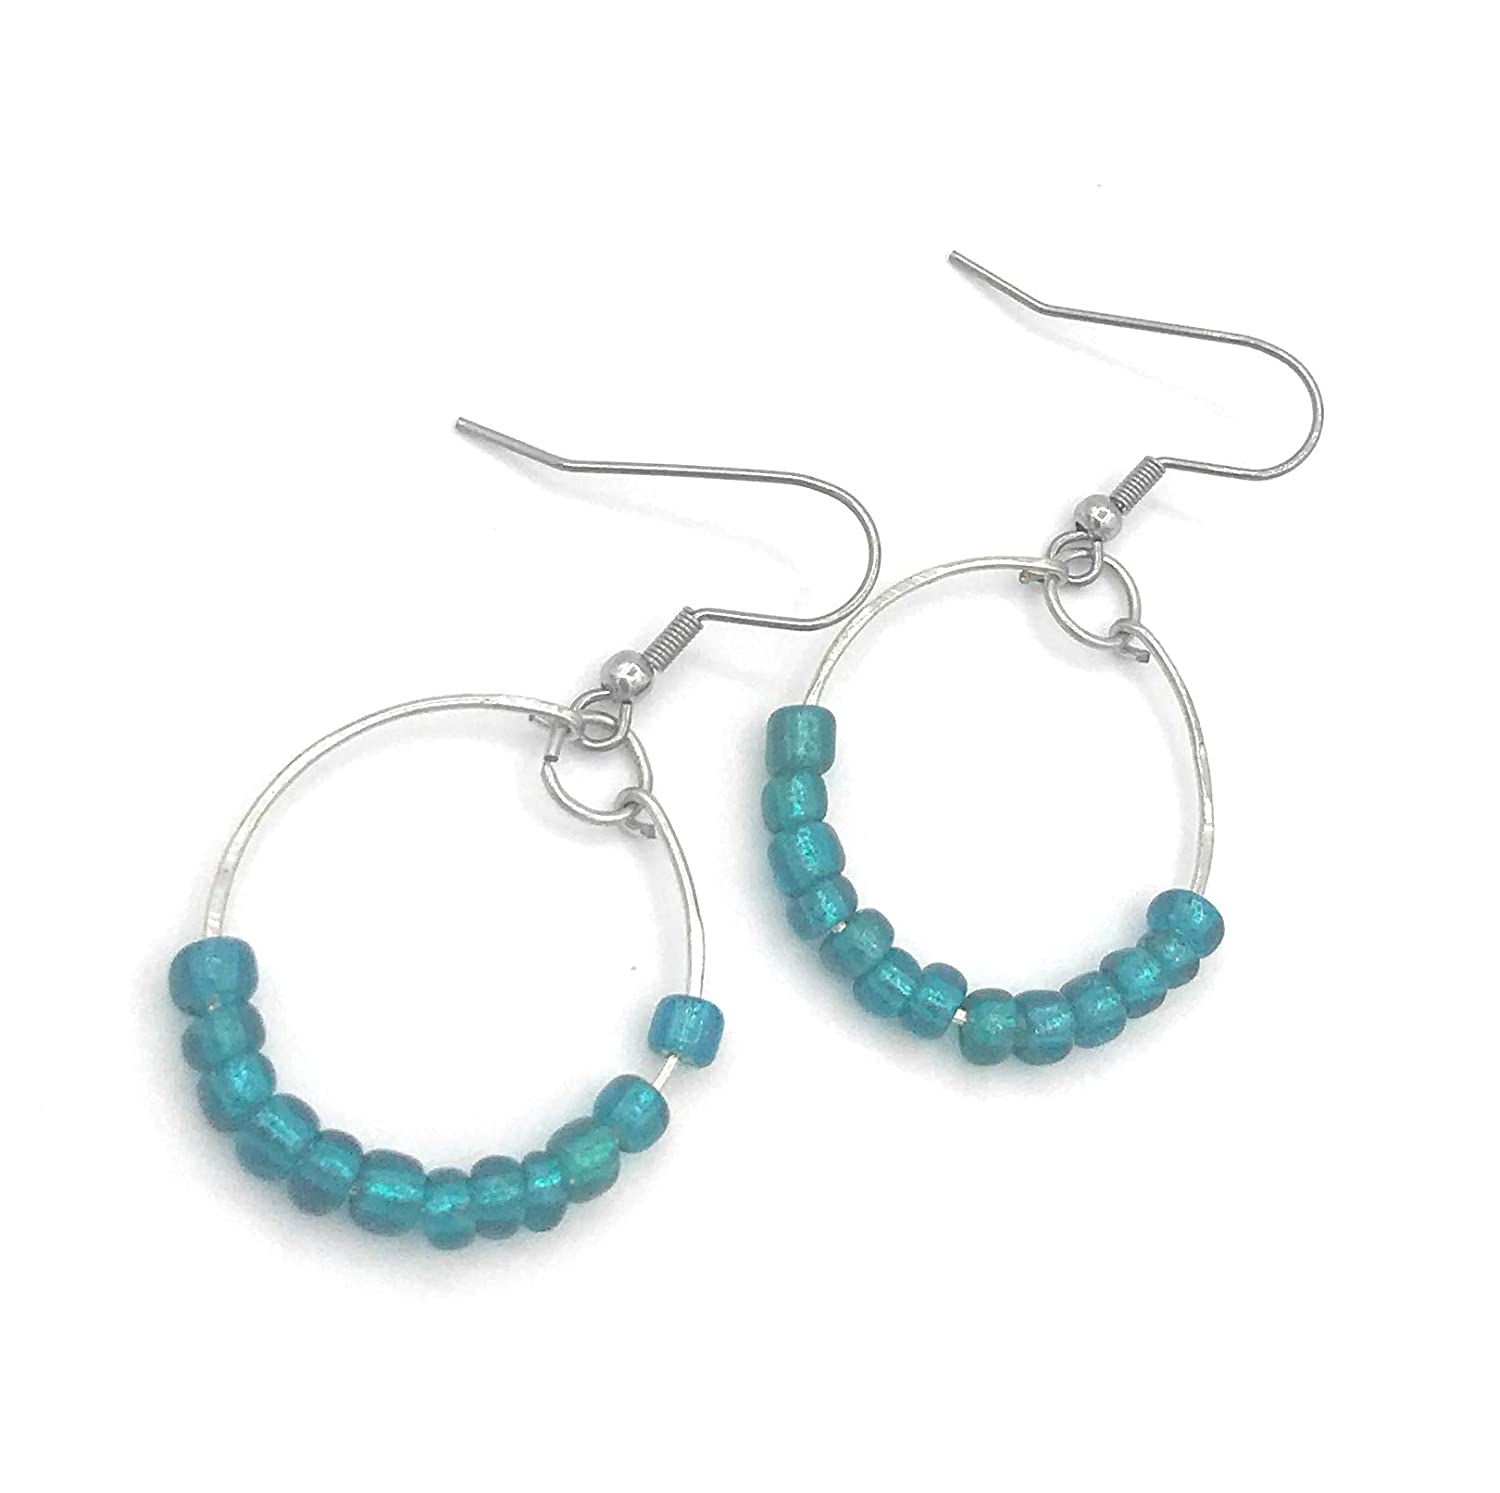 Teal Blue Beaded Hoop Earrings Diagonal View from Scott D Jewelry Designs